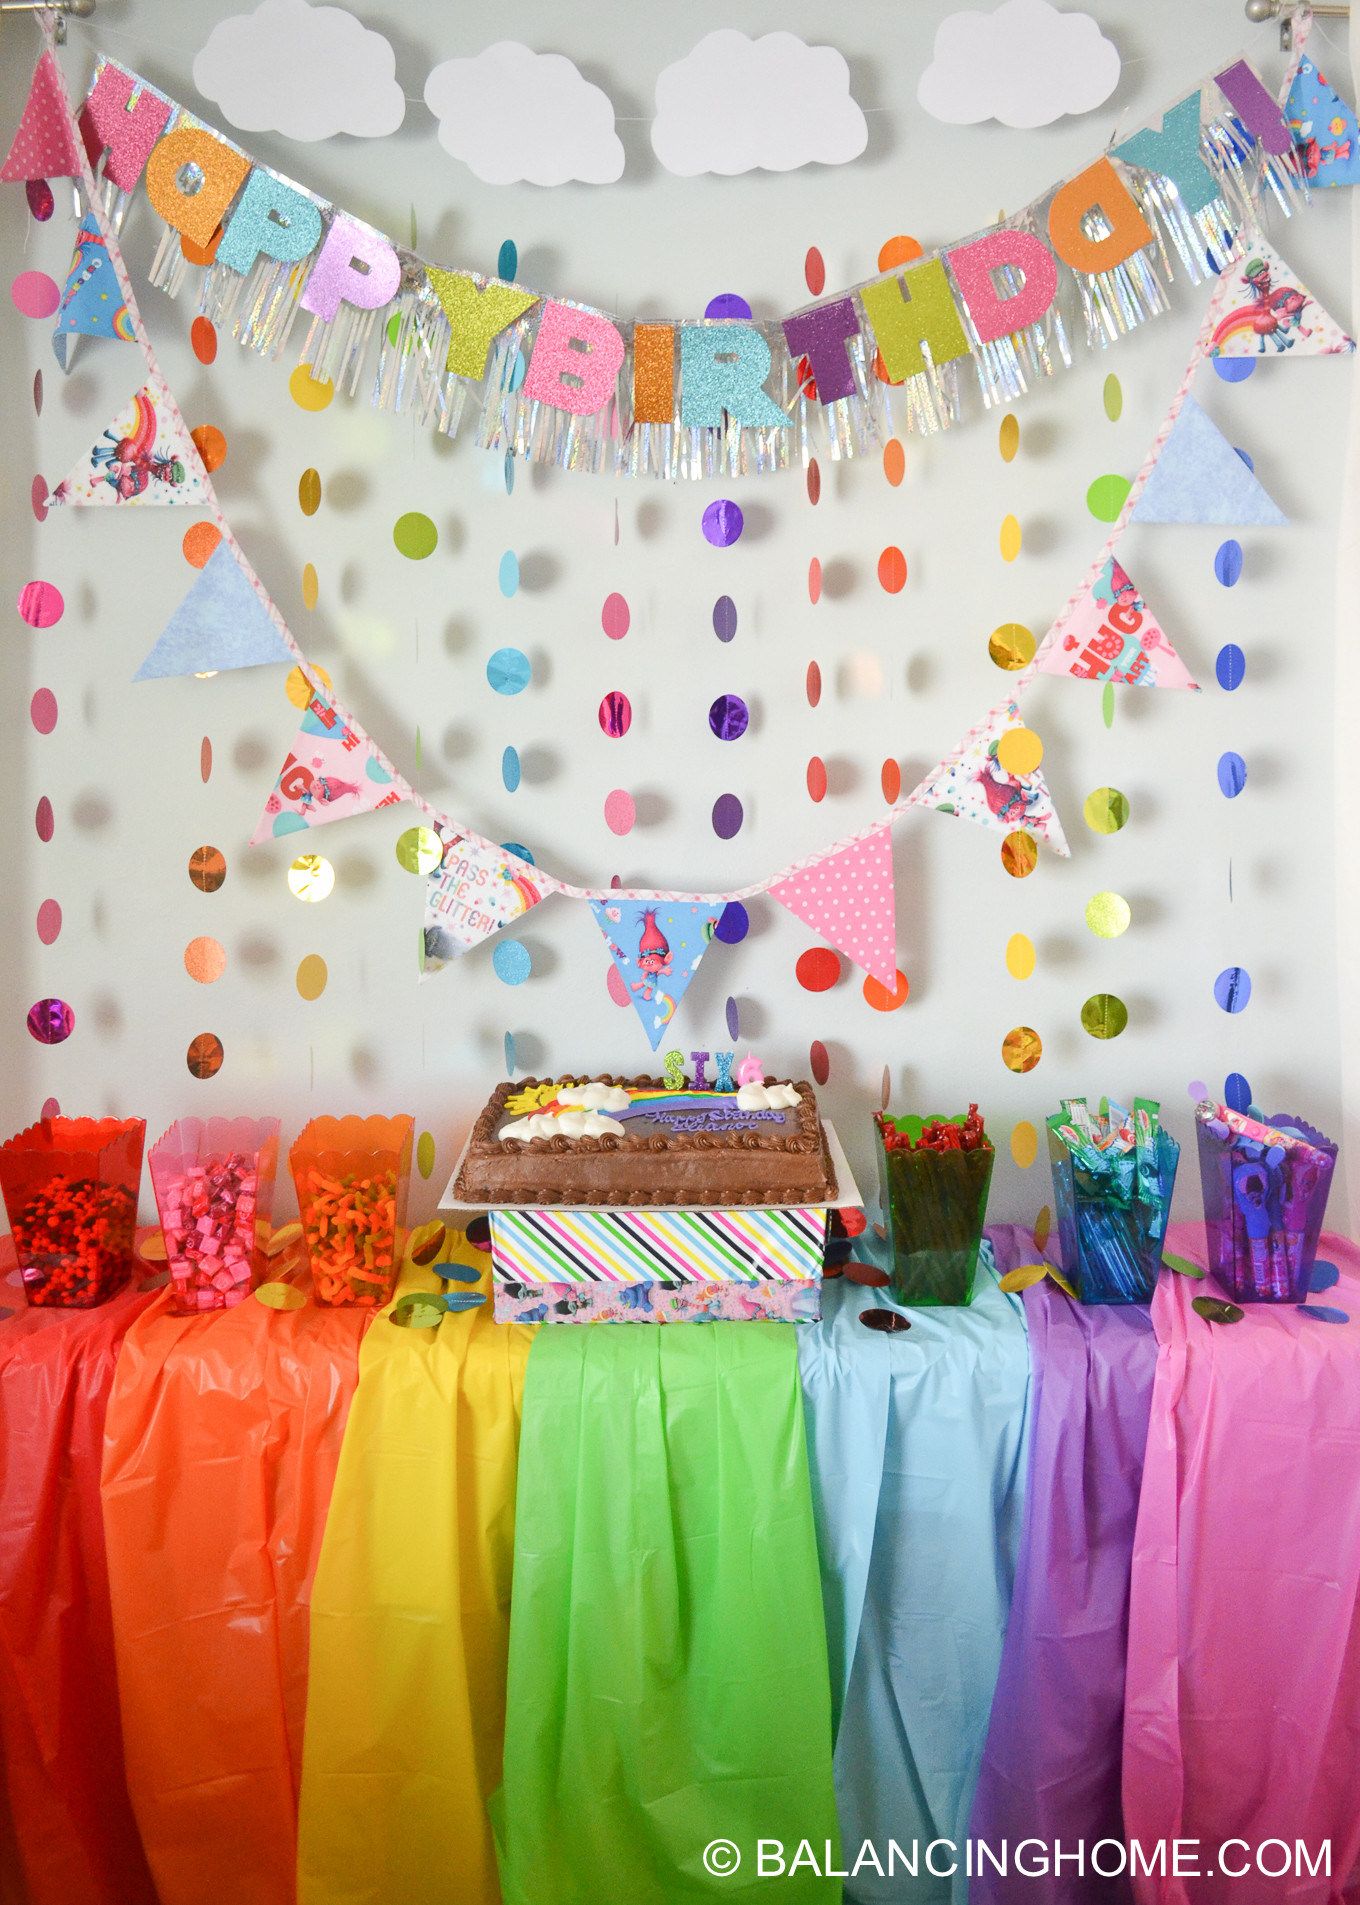 Trolls Diy Party Ideas
 Trolls Birthday Party Ideas for a Simple Trolls Themed